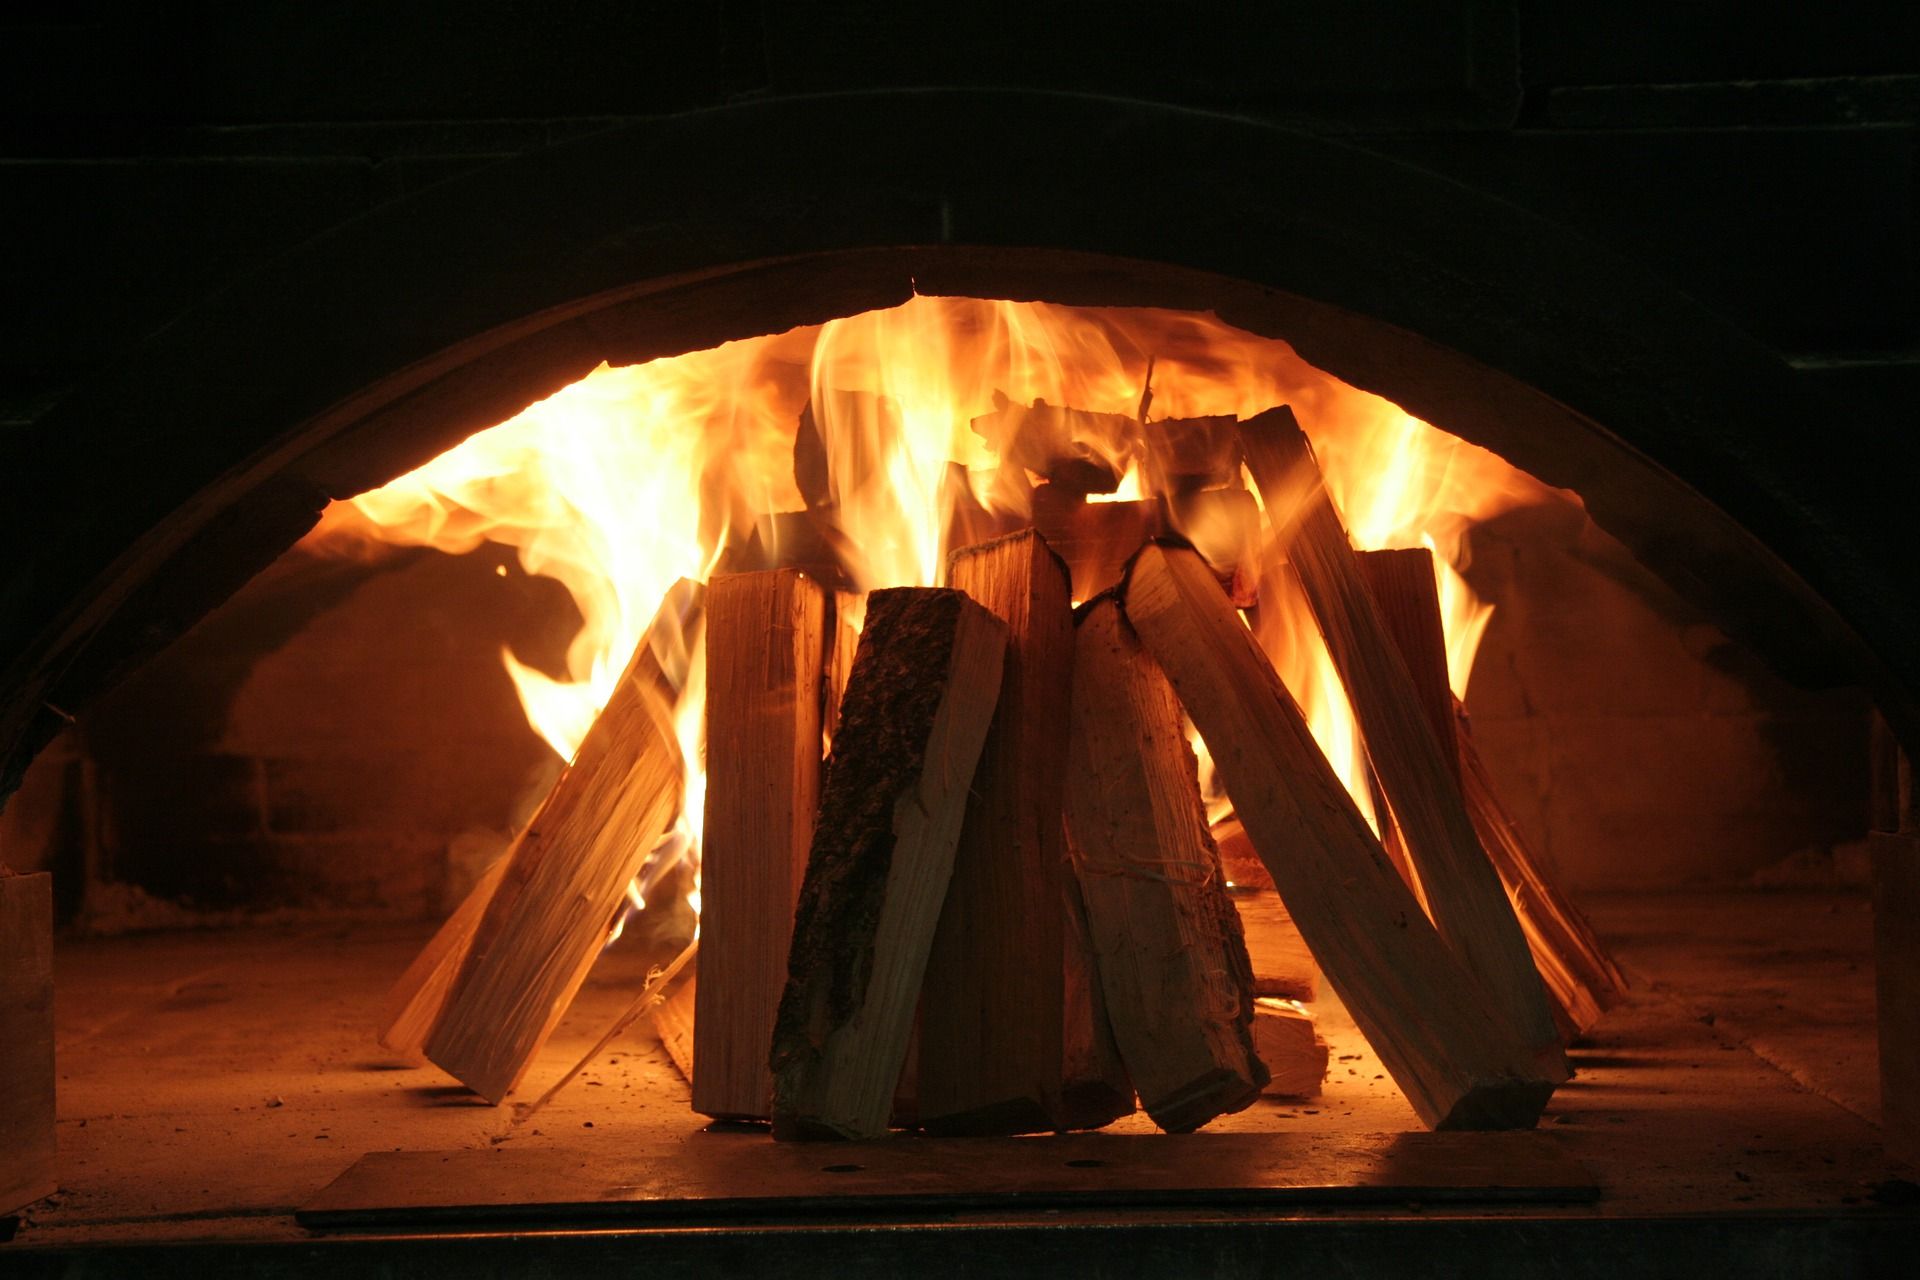 Steken jas verbrand Overlast en gezondheidsrisico's door houtkachels - Kassa - BNNVARA